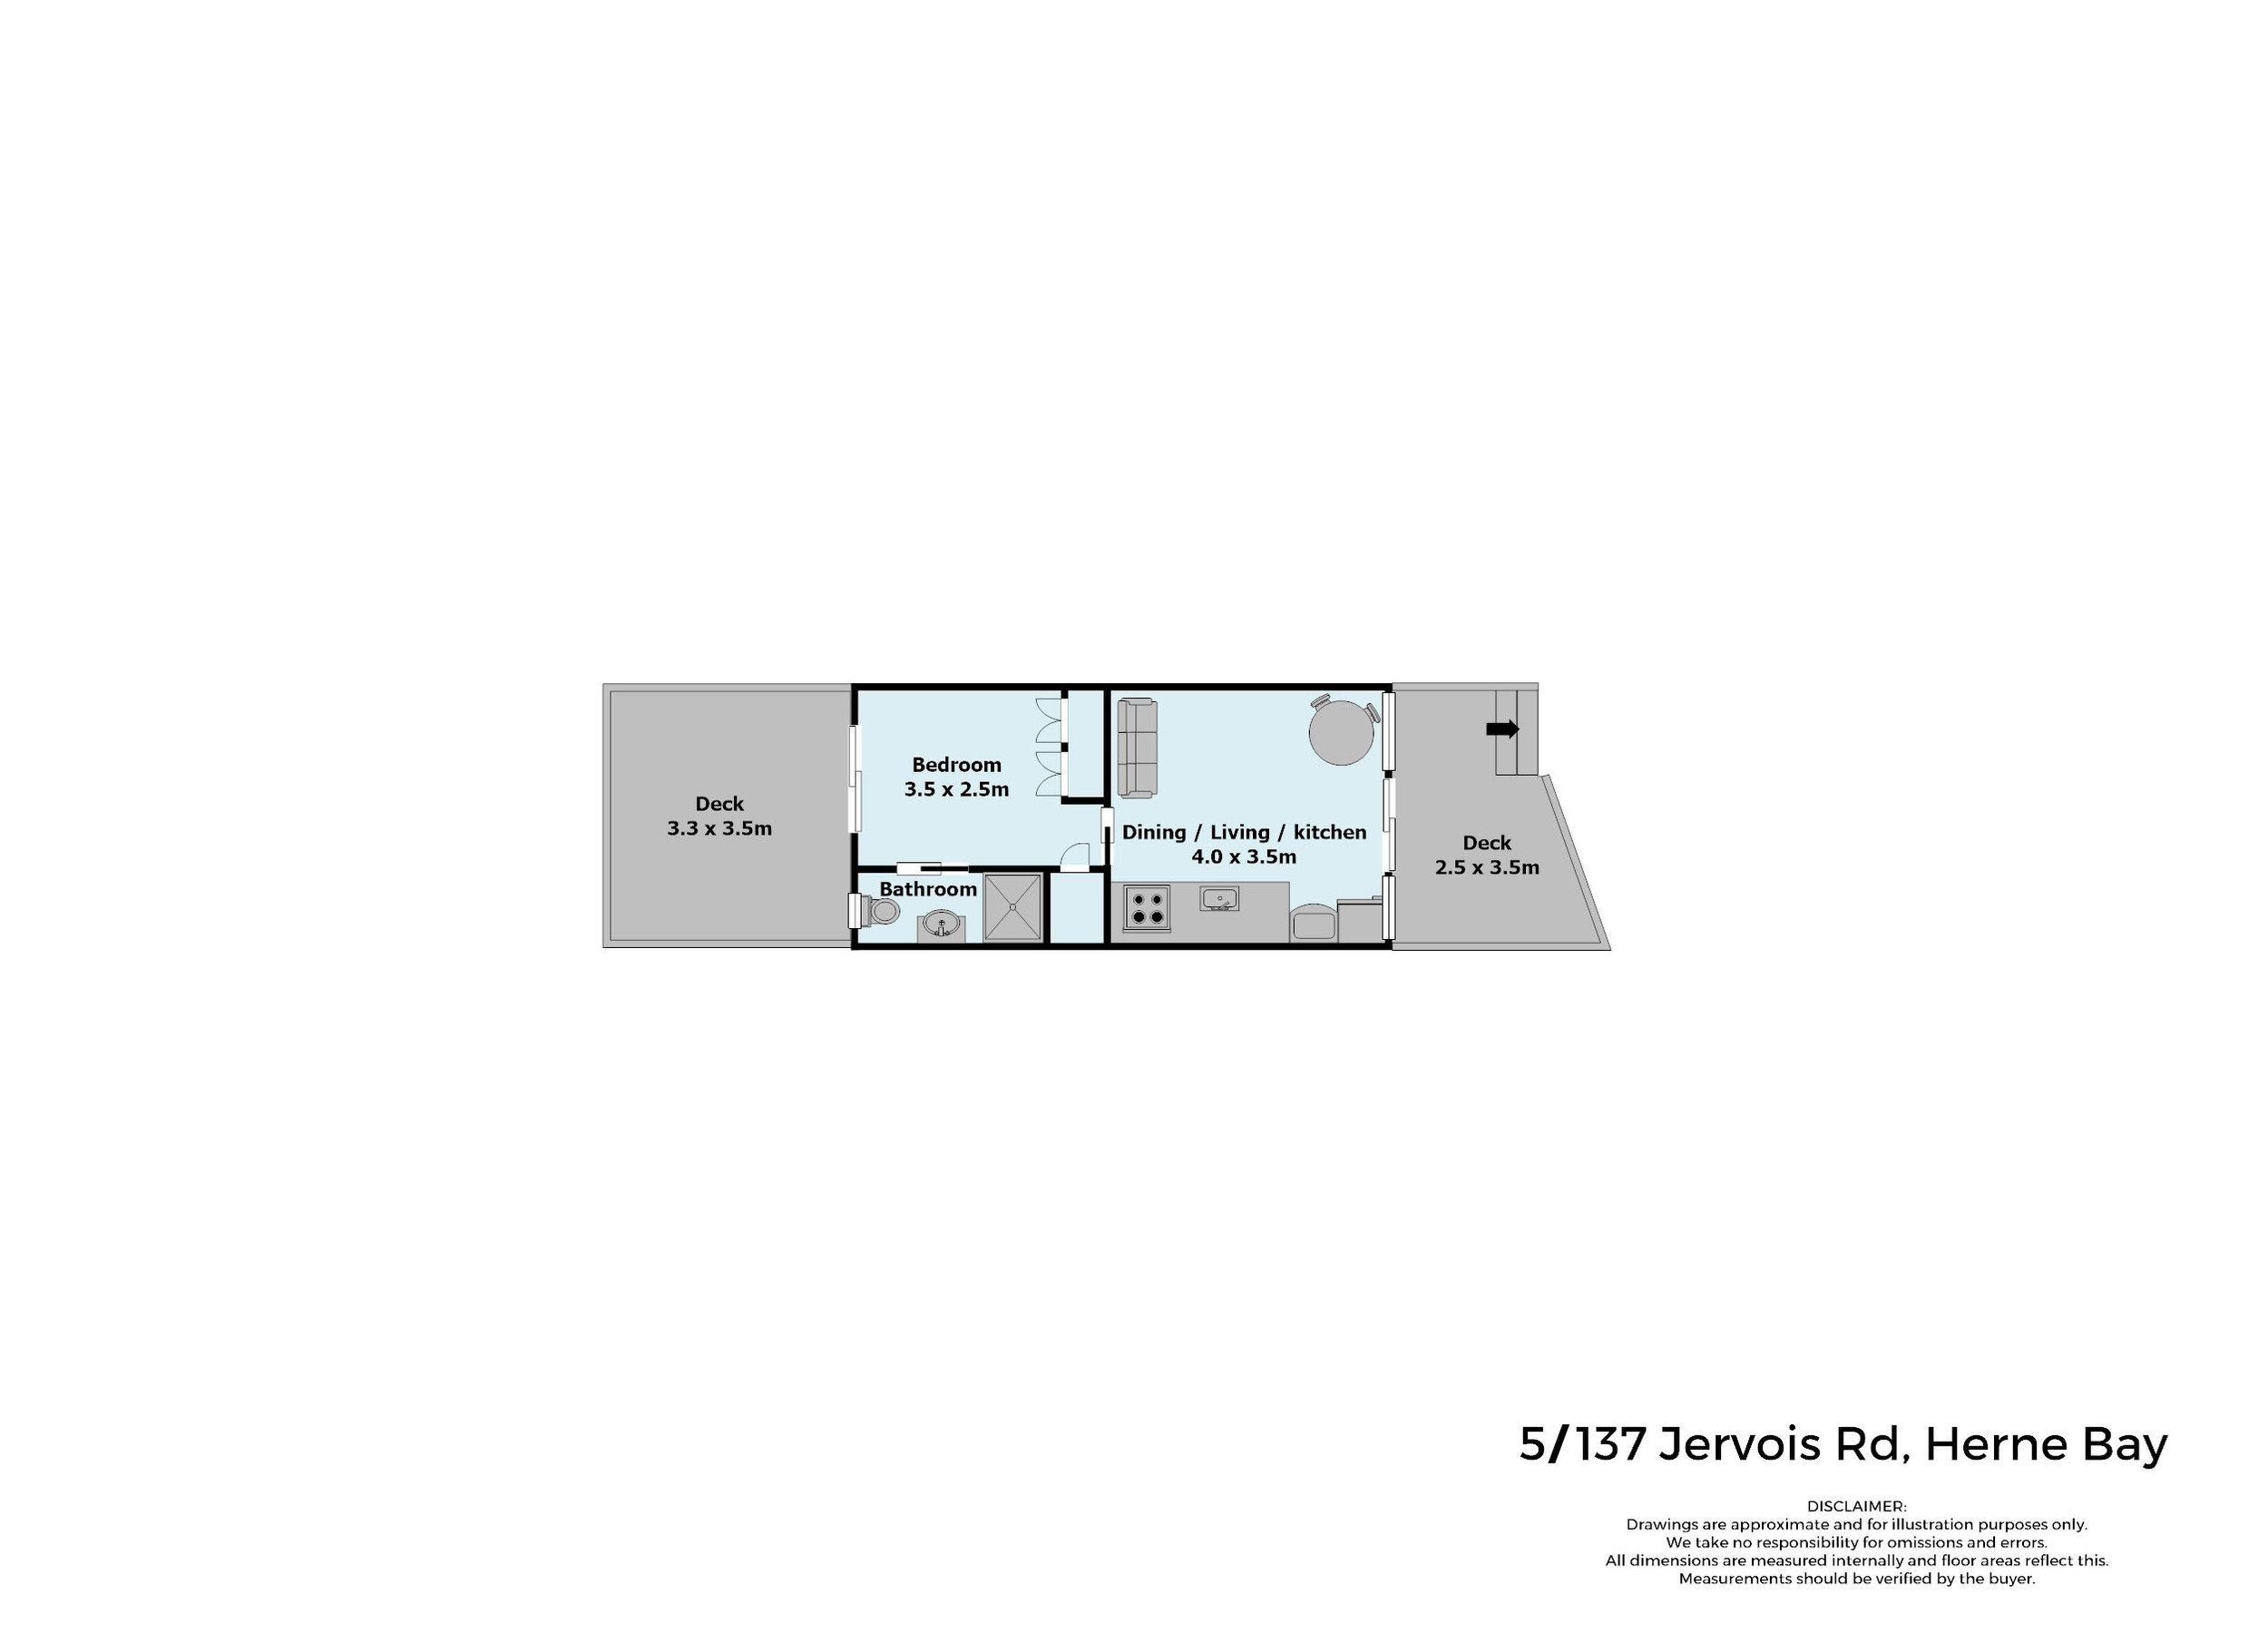 5-137 Jervois Rd Floorplan.jpg